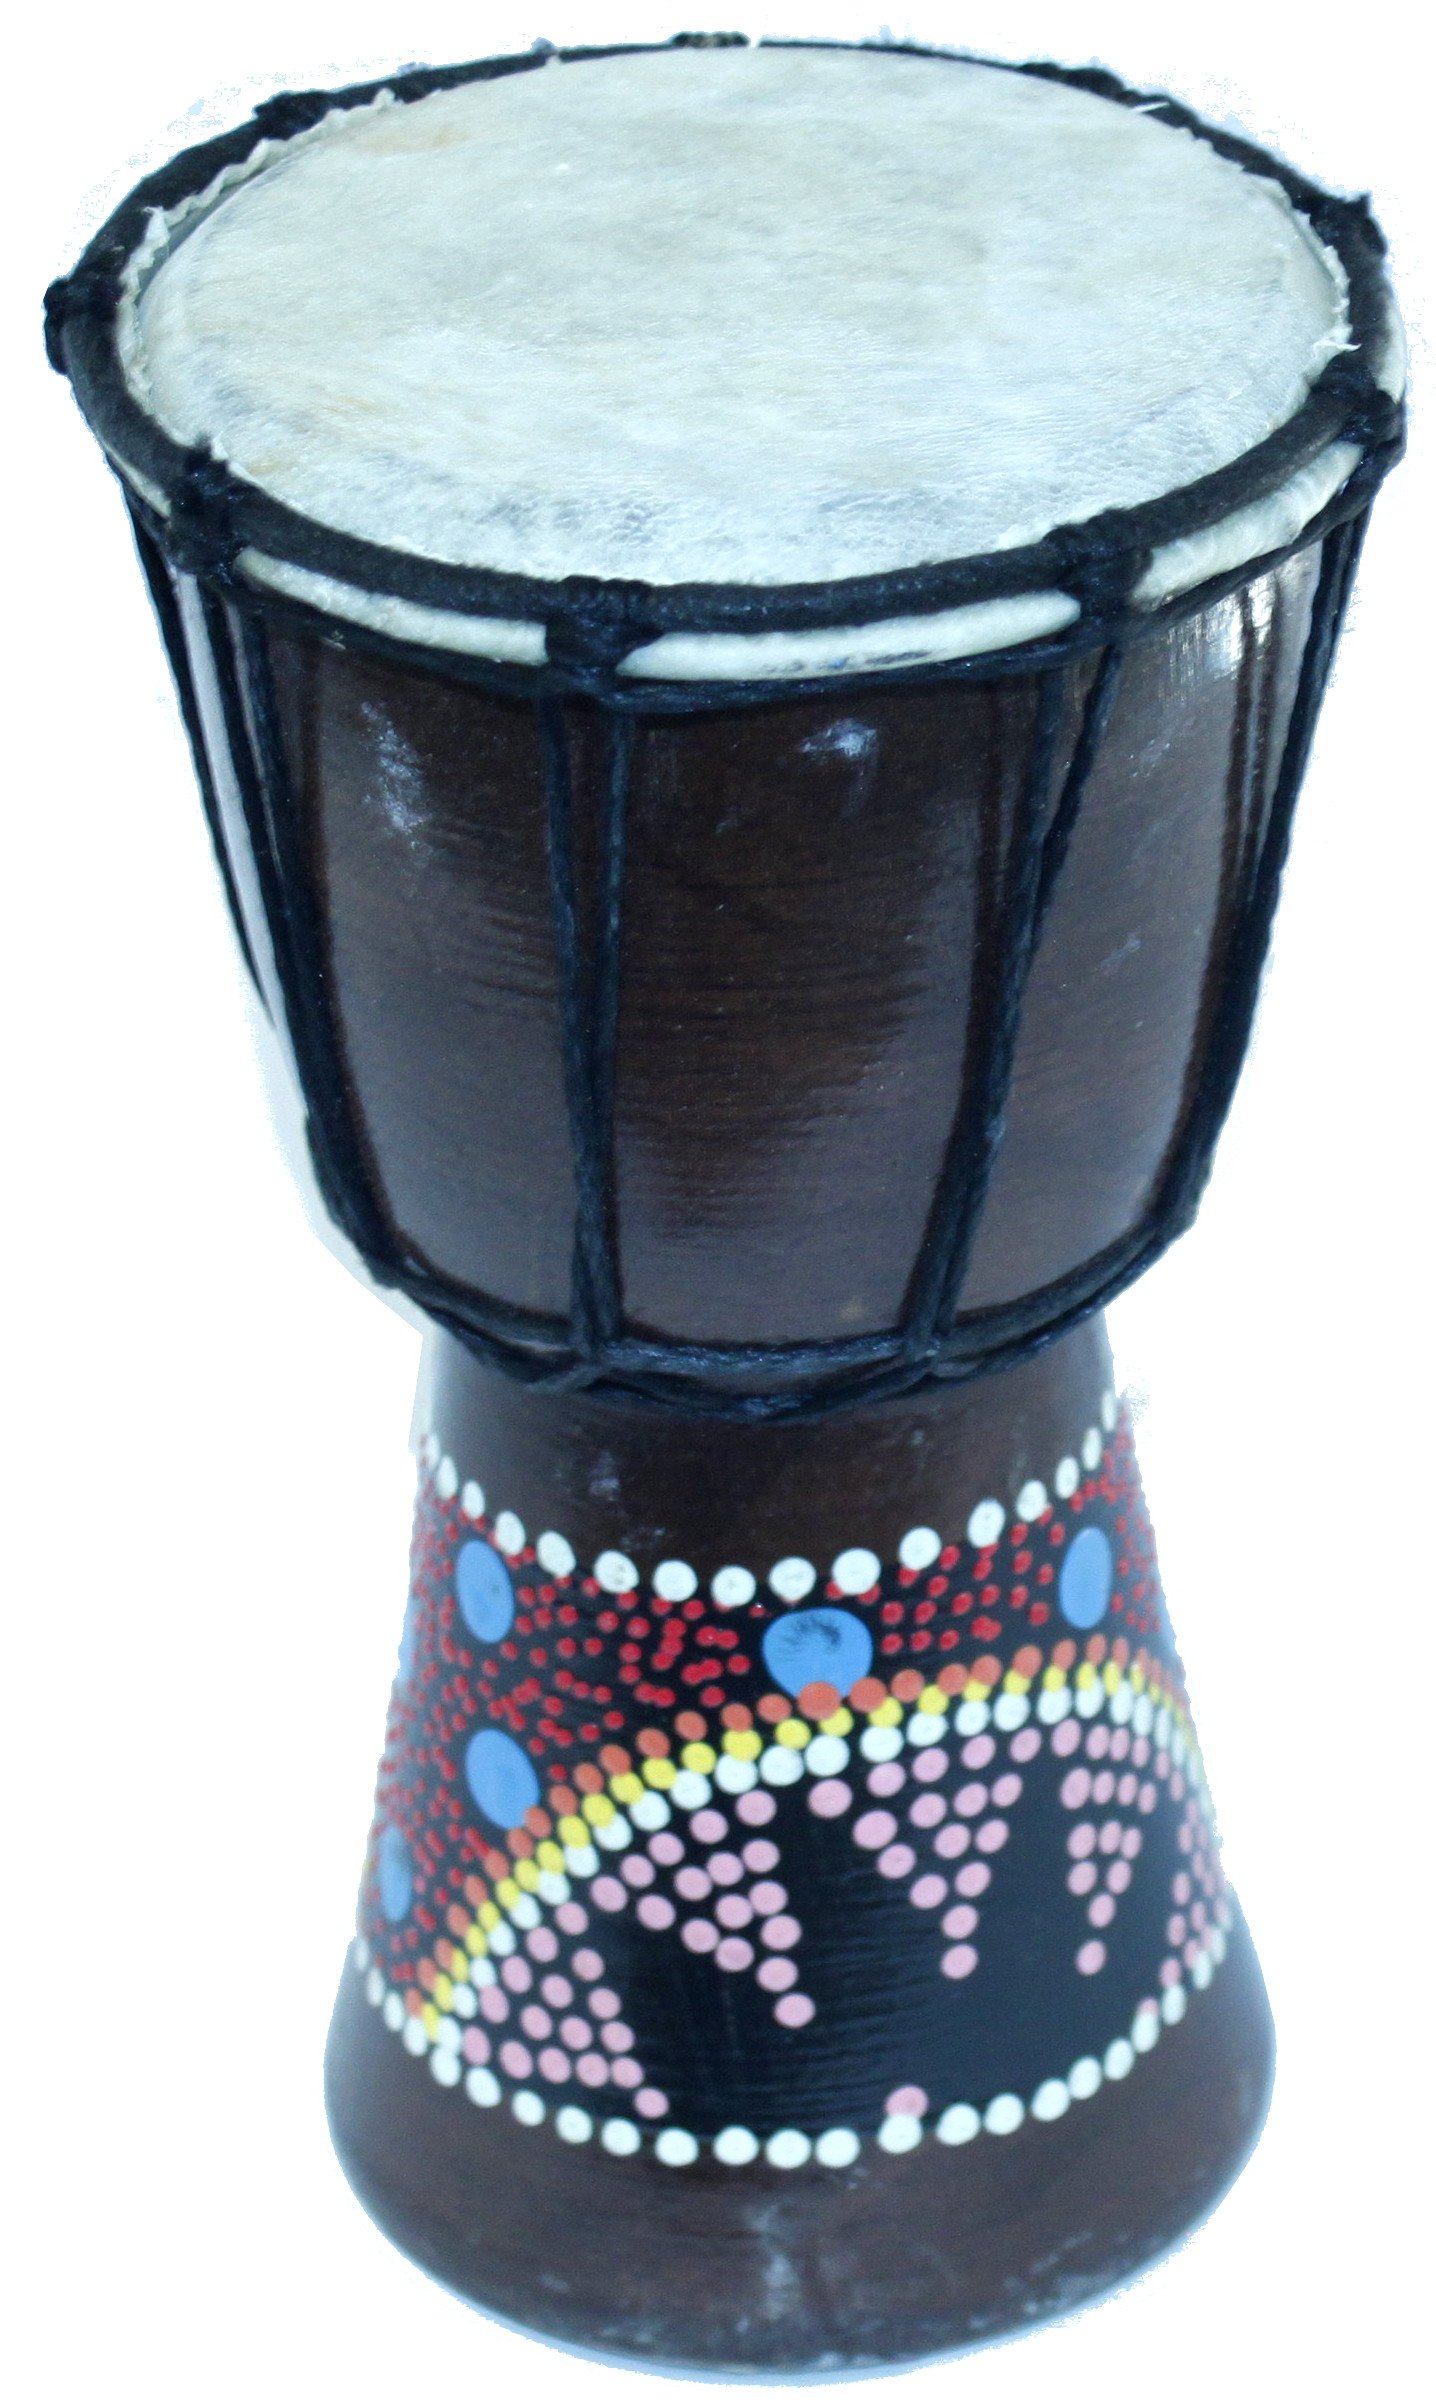 信頼 送料無料 JamTown Djembe Jr. or Jembe Set Set Drum World With Djembe With  colored dots Music of from Drum Jerusalem Large size (30 